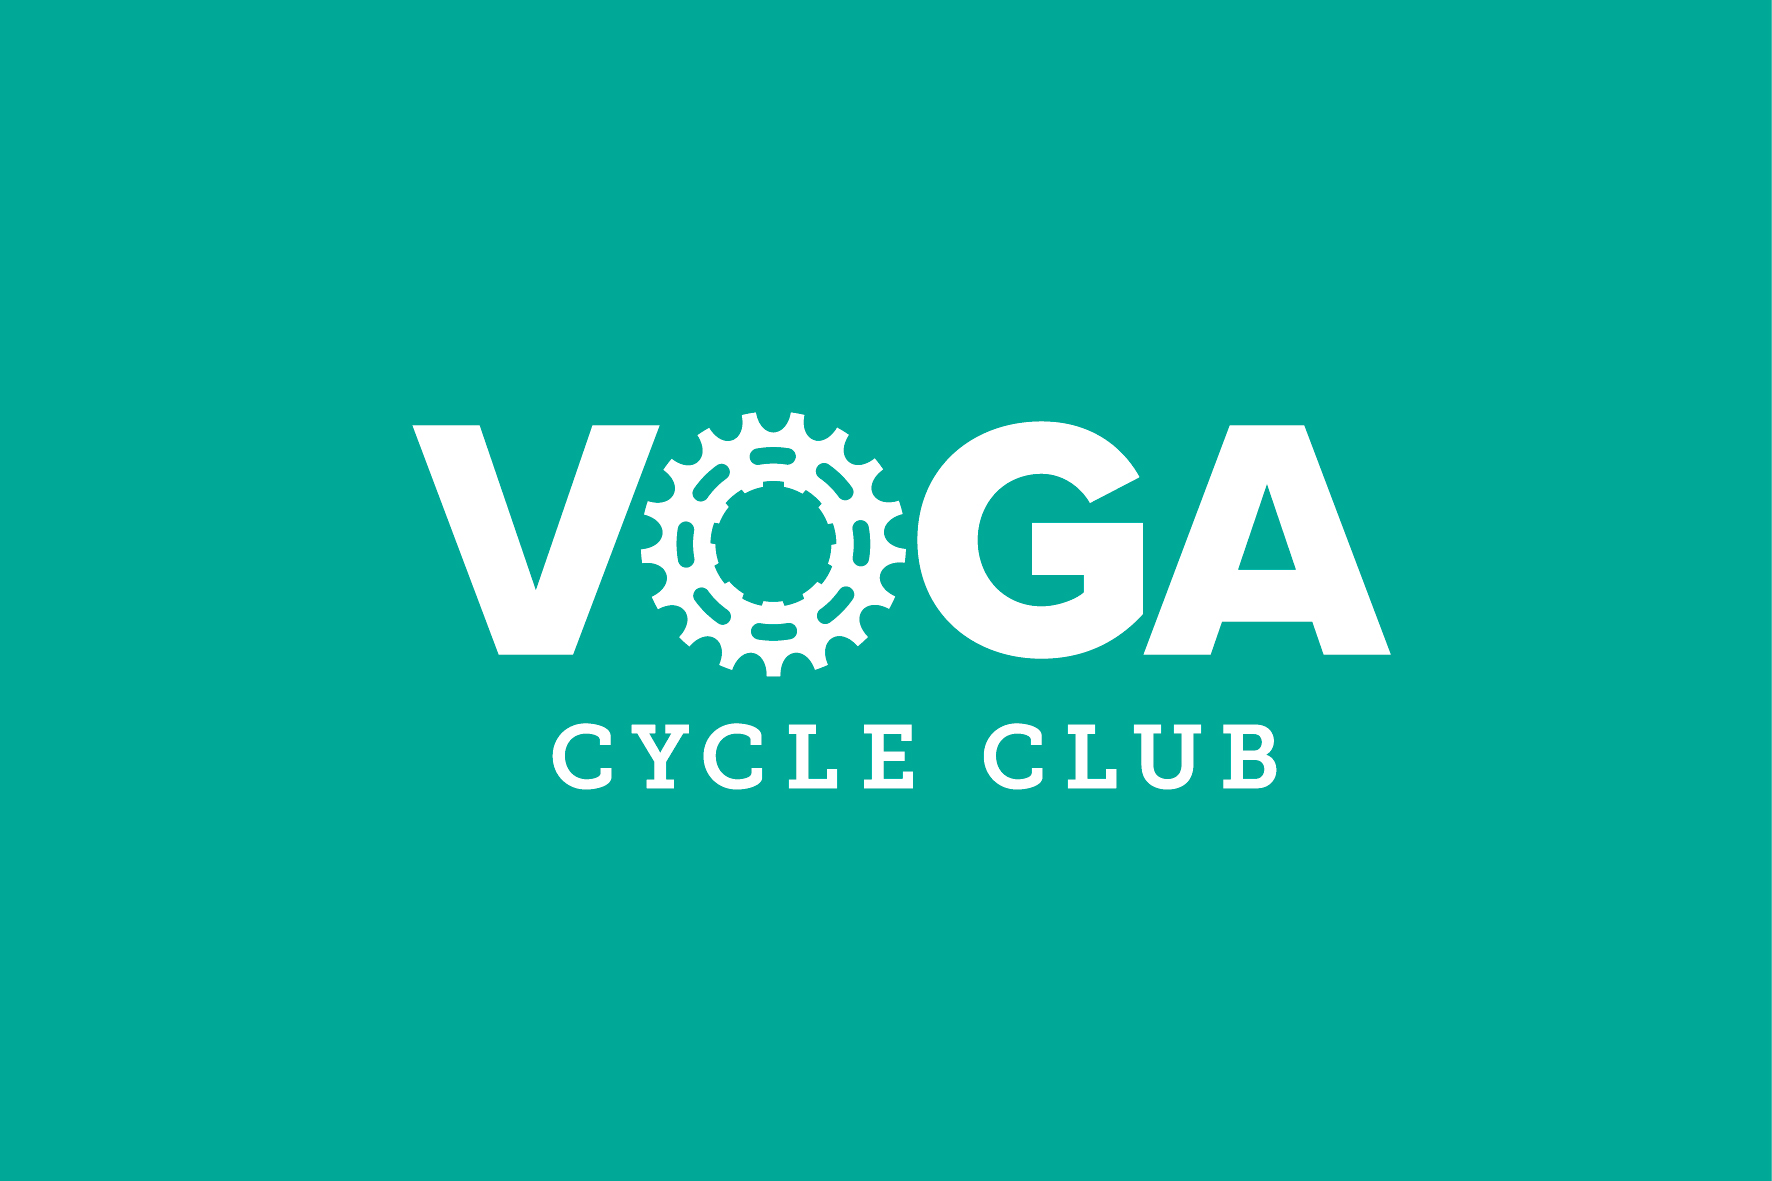 VOGA Cycle Club